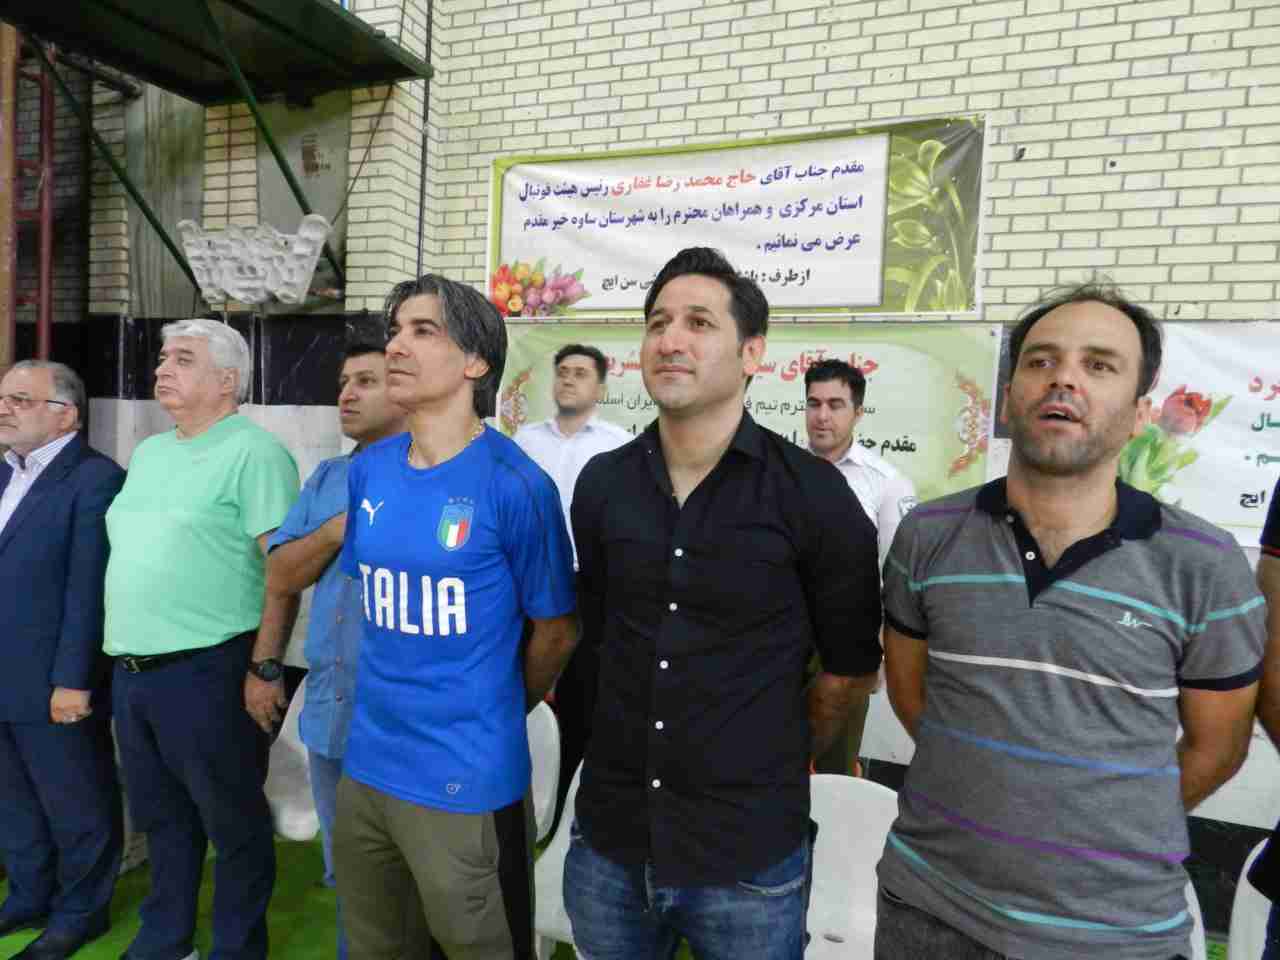 نظری : شرایط بد اقتصادی باعث حضور بازیکنان در  لیگ‌های سطح پائین شده است/ توقع داشتم مسئولان فدراسیون جایزه من و شمس را پیگیری می کردند